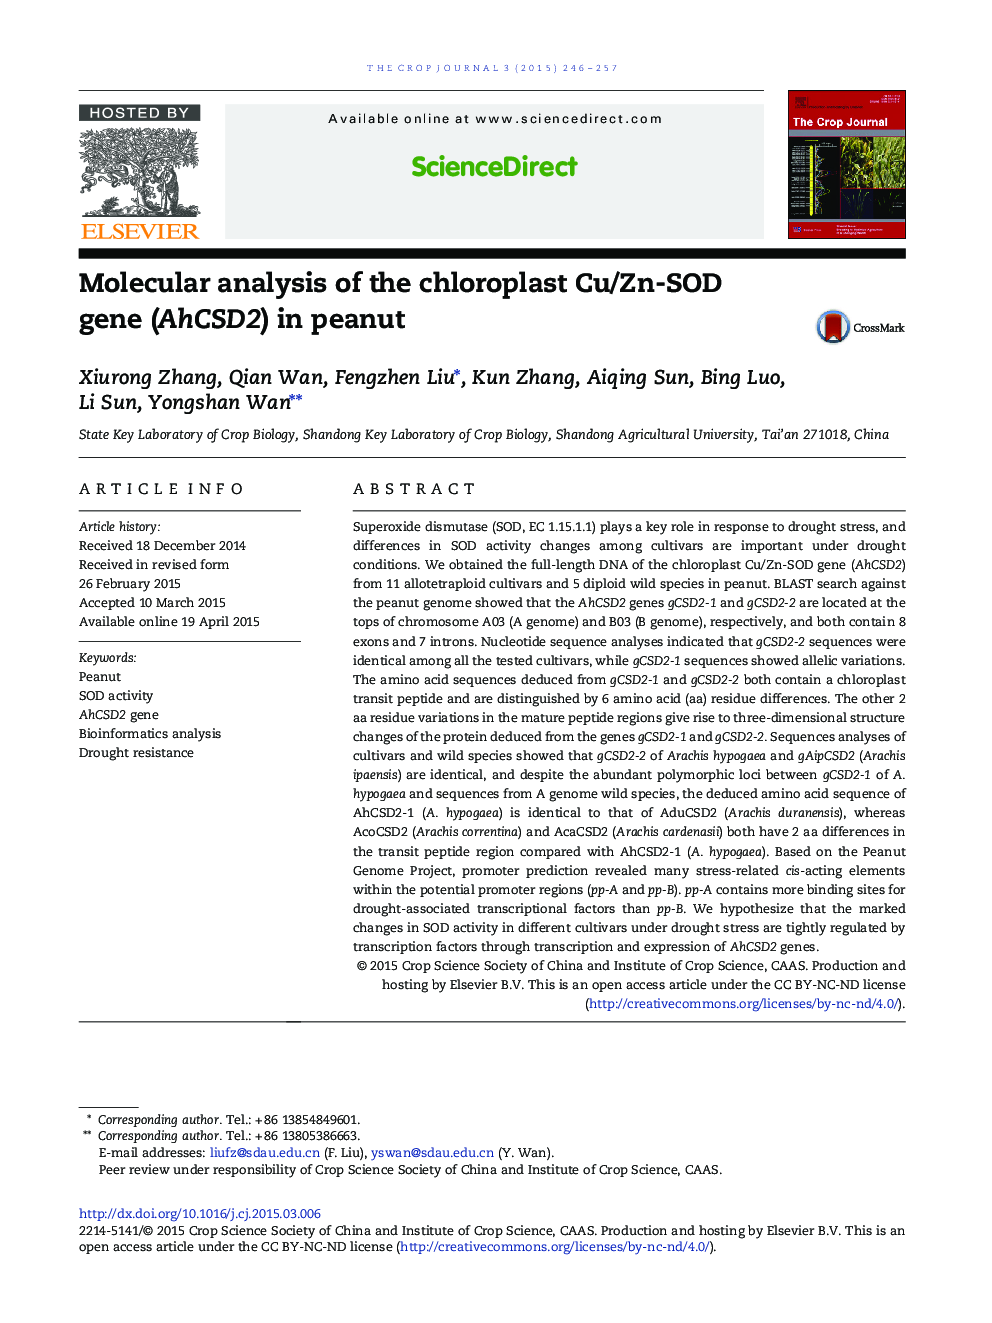 Molecular analysis of the chloroplast Cu/Zn-SOD gene (AhCSD2) in peanut 